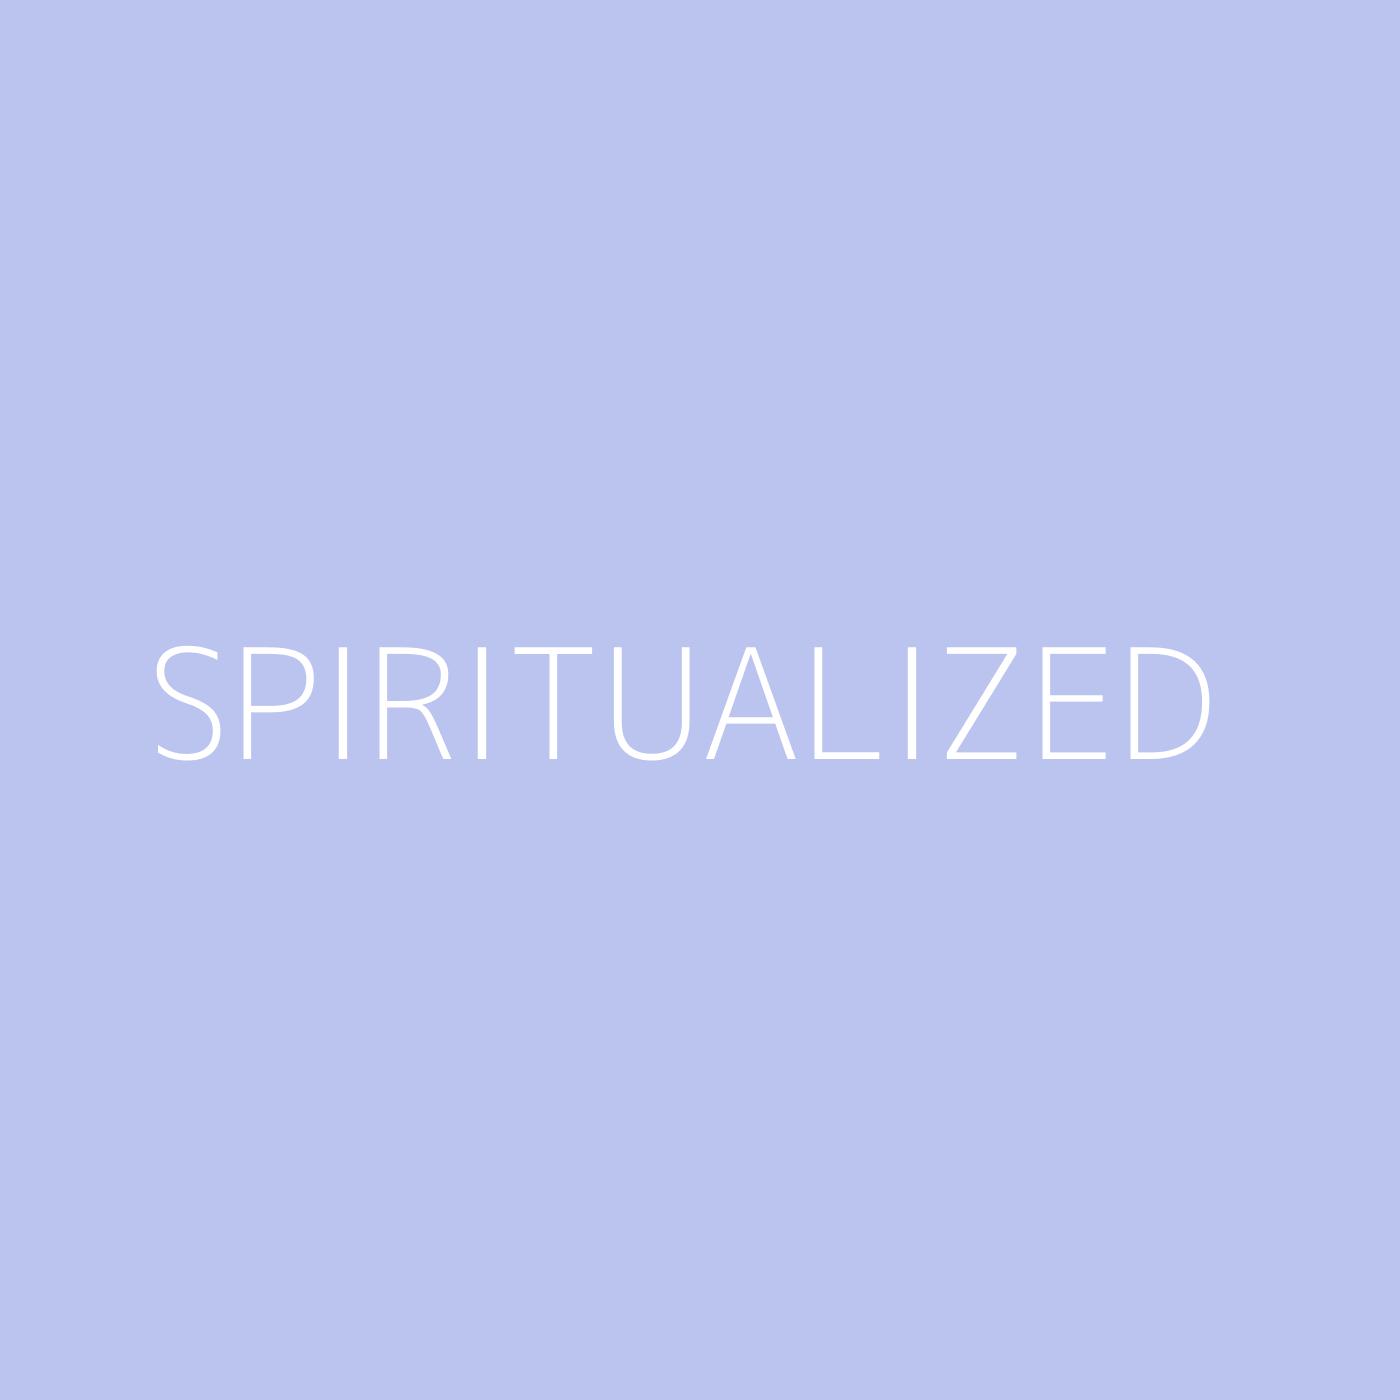 Spiritualized Playlist Artwork